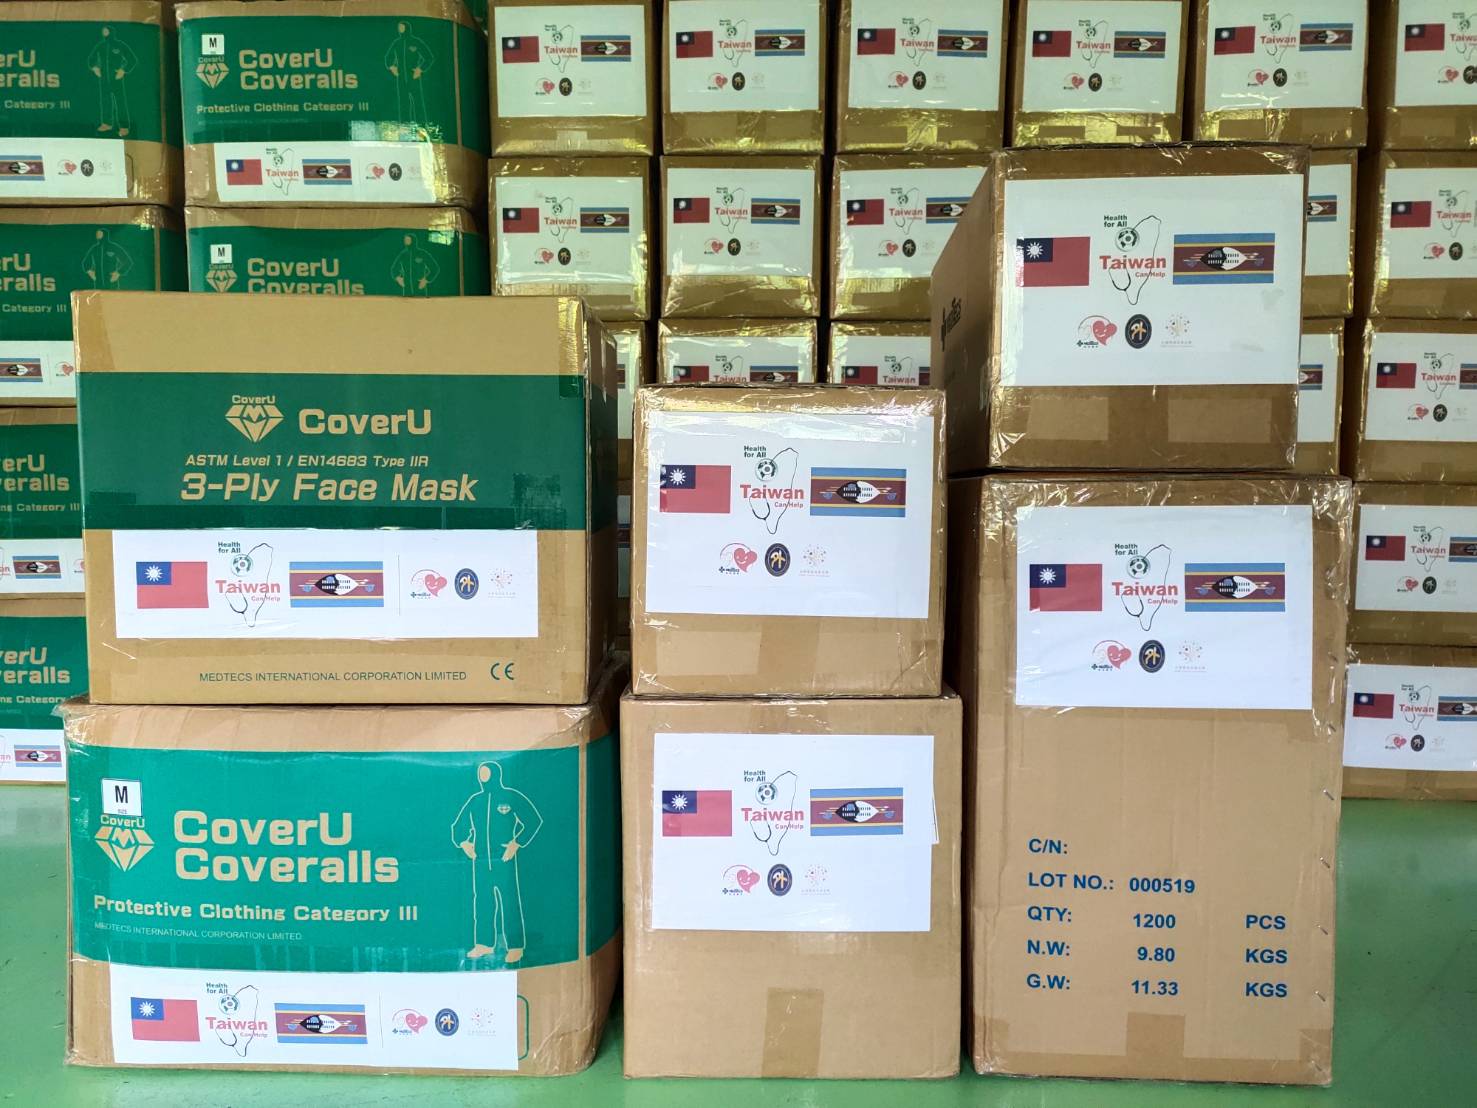 台積電、美德醫捐贈友邦防疫物資 外交部讚彰顯人道援助軟實力